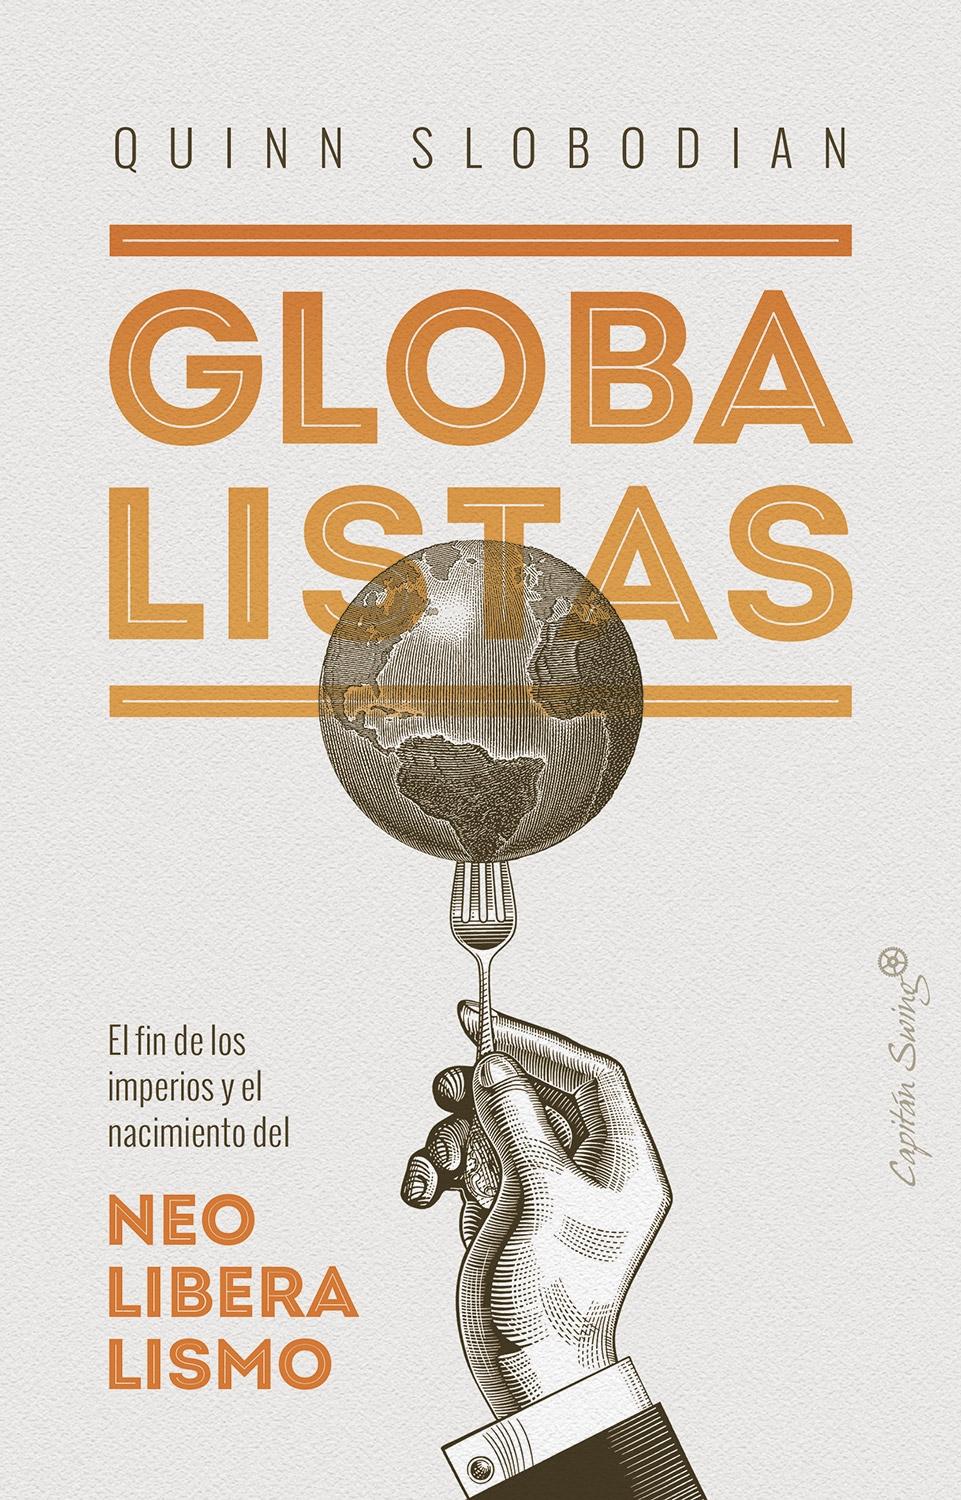 Globalistas "El fin de los imperios y el nacimiento del neoliberalismo"